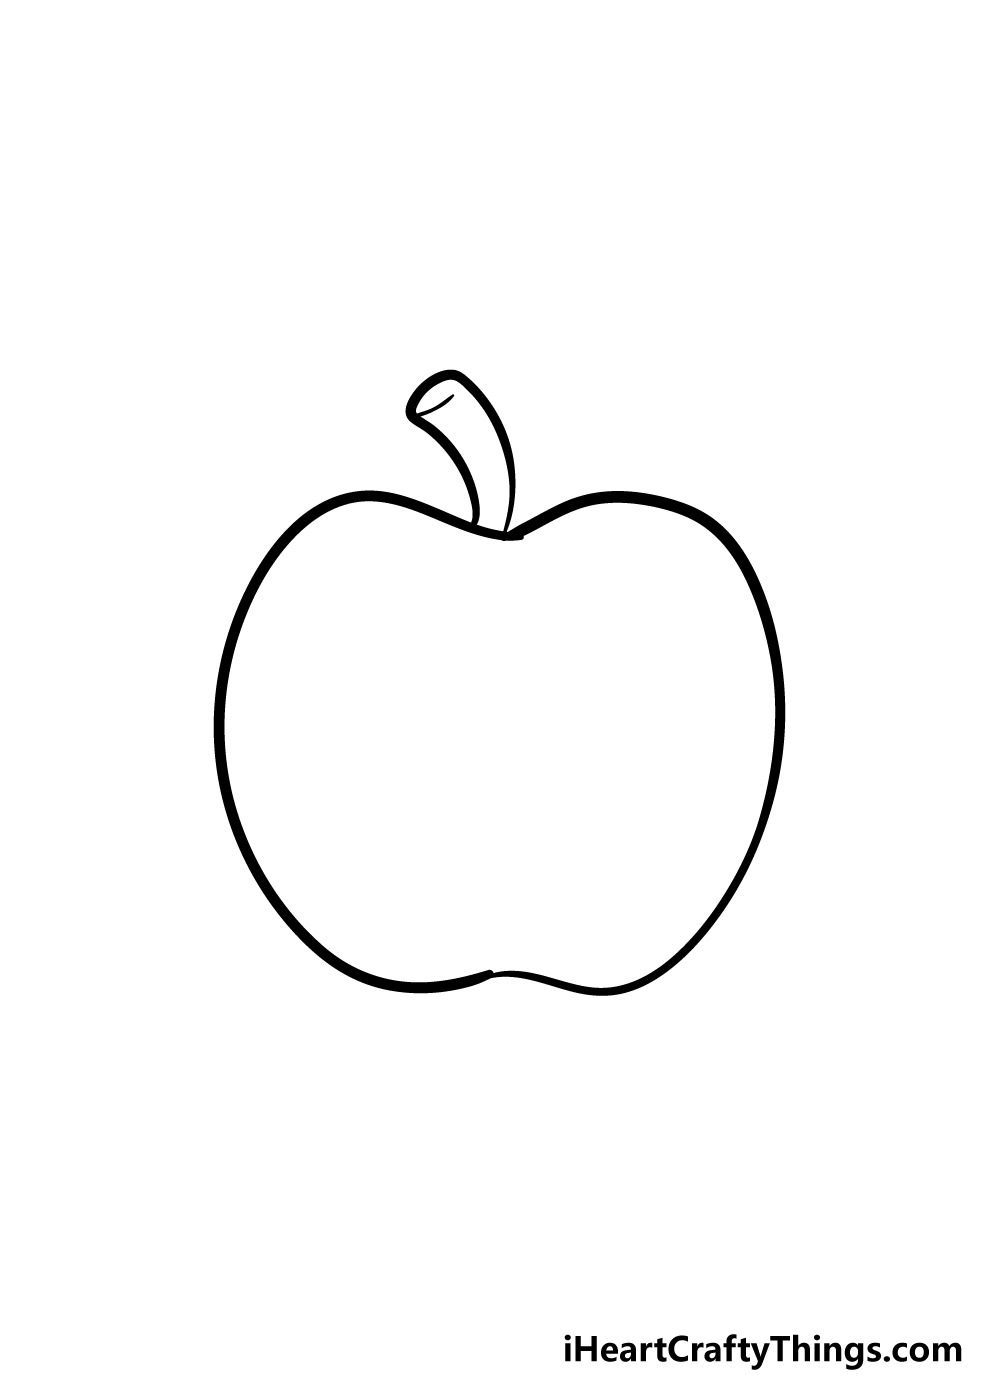 Apple 3 - Hướng dẫn chi tiết cách vẽ quả táo đơn giản với 6 bước cơ bản